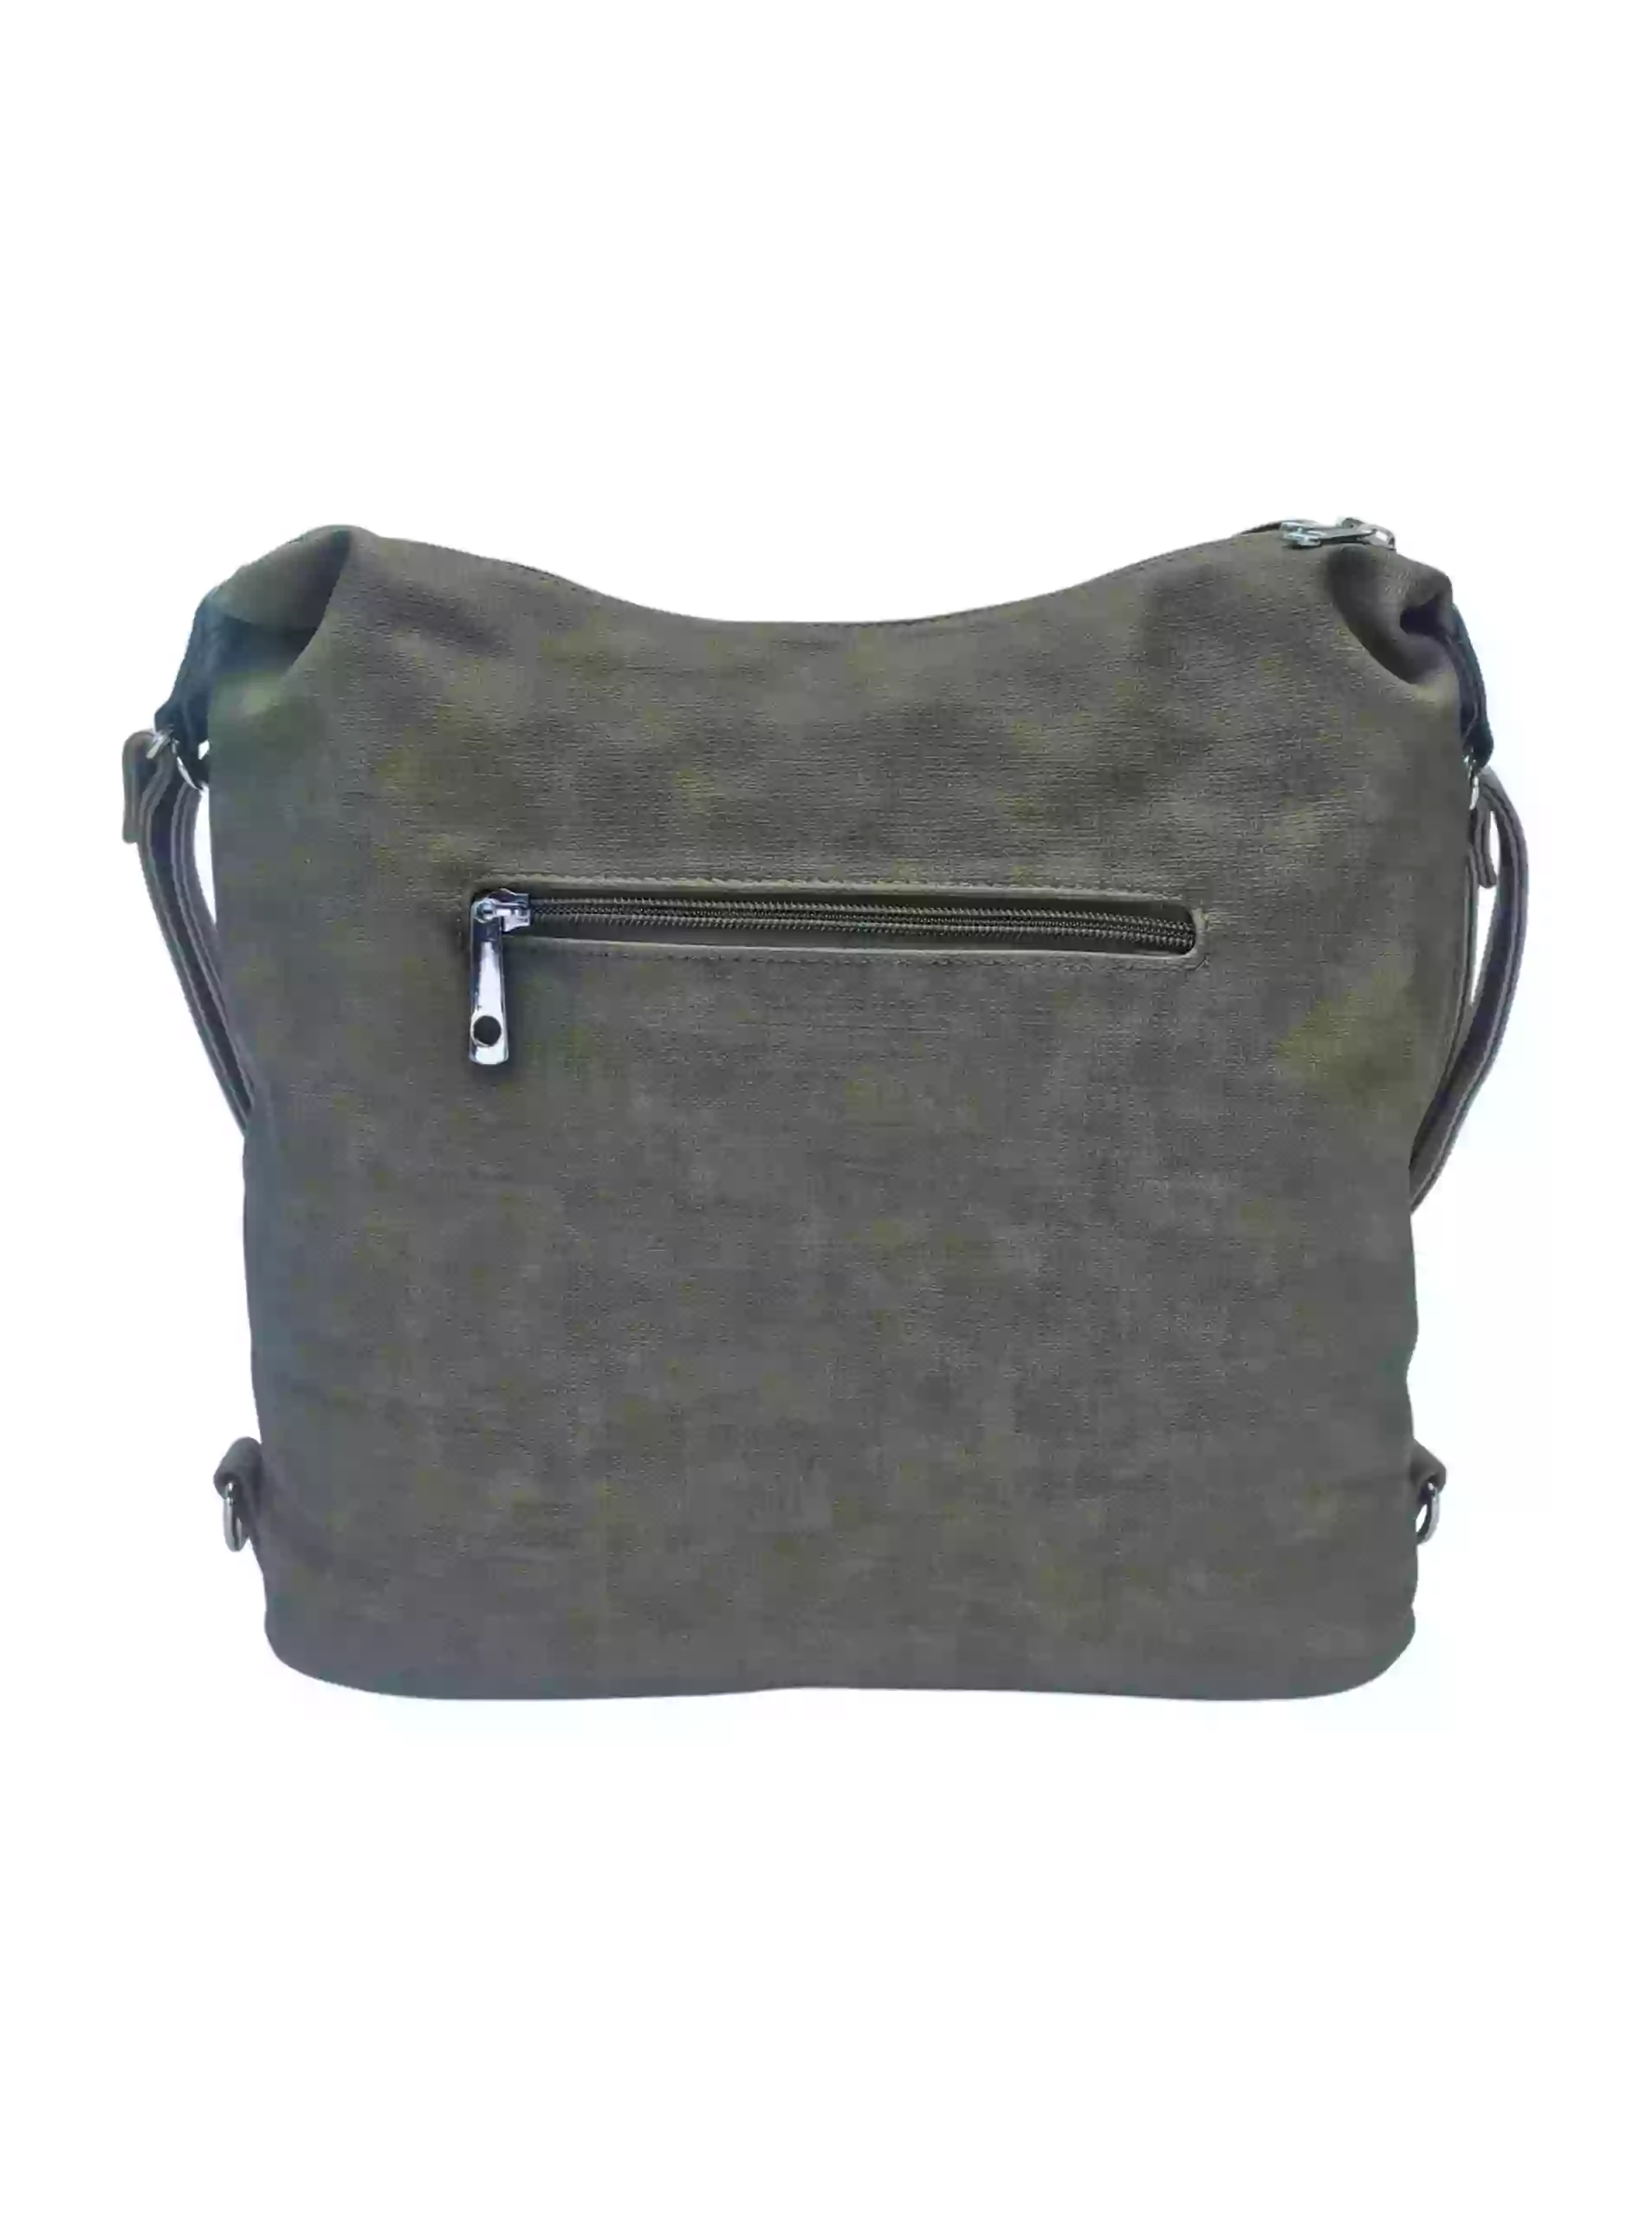 Moderní khaki kabelko-batoh z eko kůže, Tapple, H190010, zadní strana kabelko-batohu